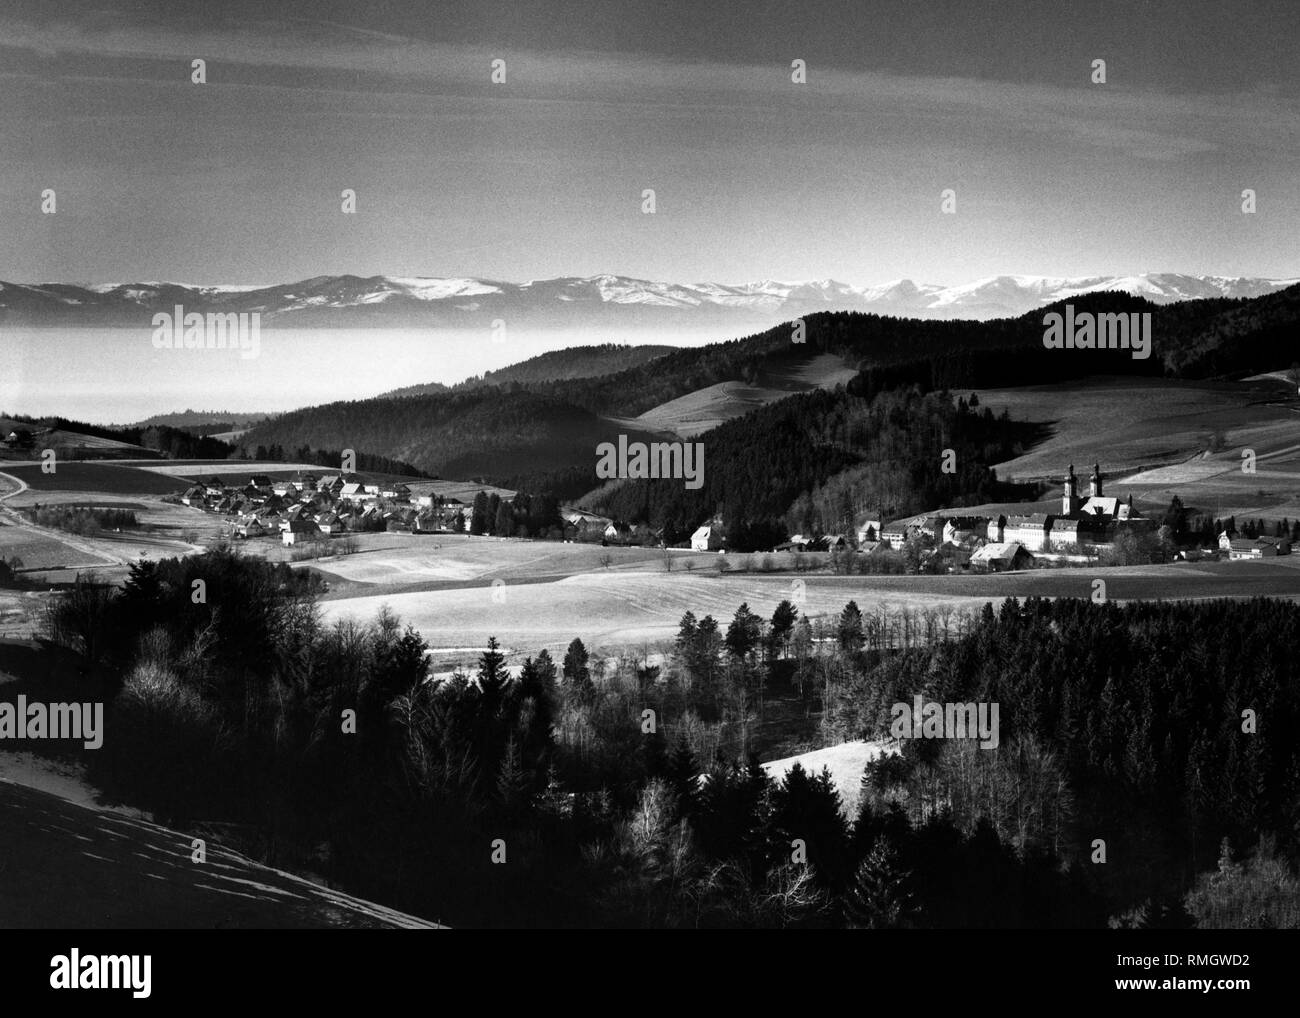 Vista panoramica sul villaggio di San Pietro nel sud della Foresta Nera e la nebbia la valle del Reno alle vette innevate delle Vosges. Immagine non datata. Foto Stock